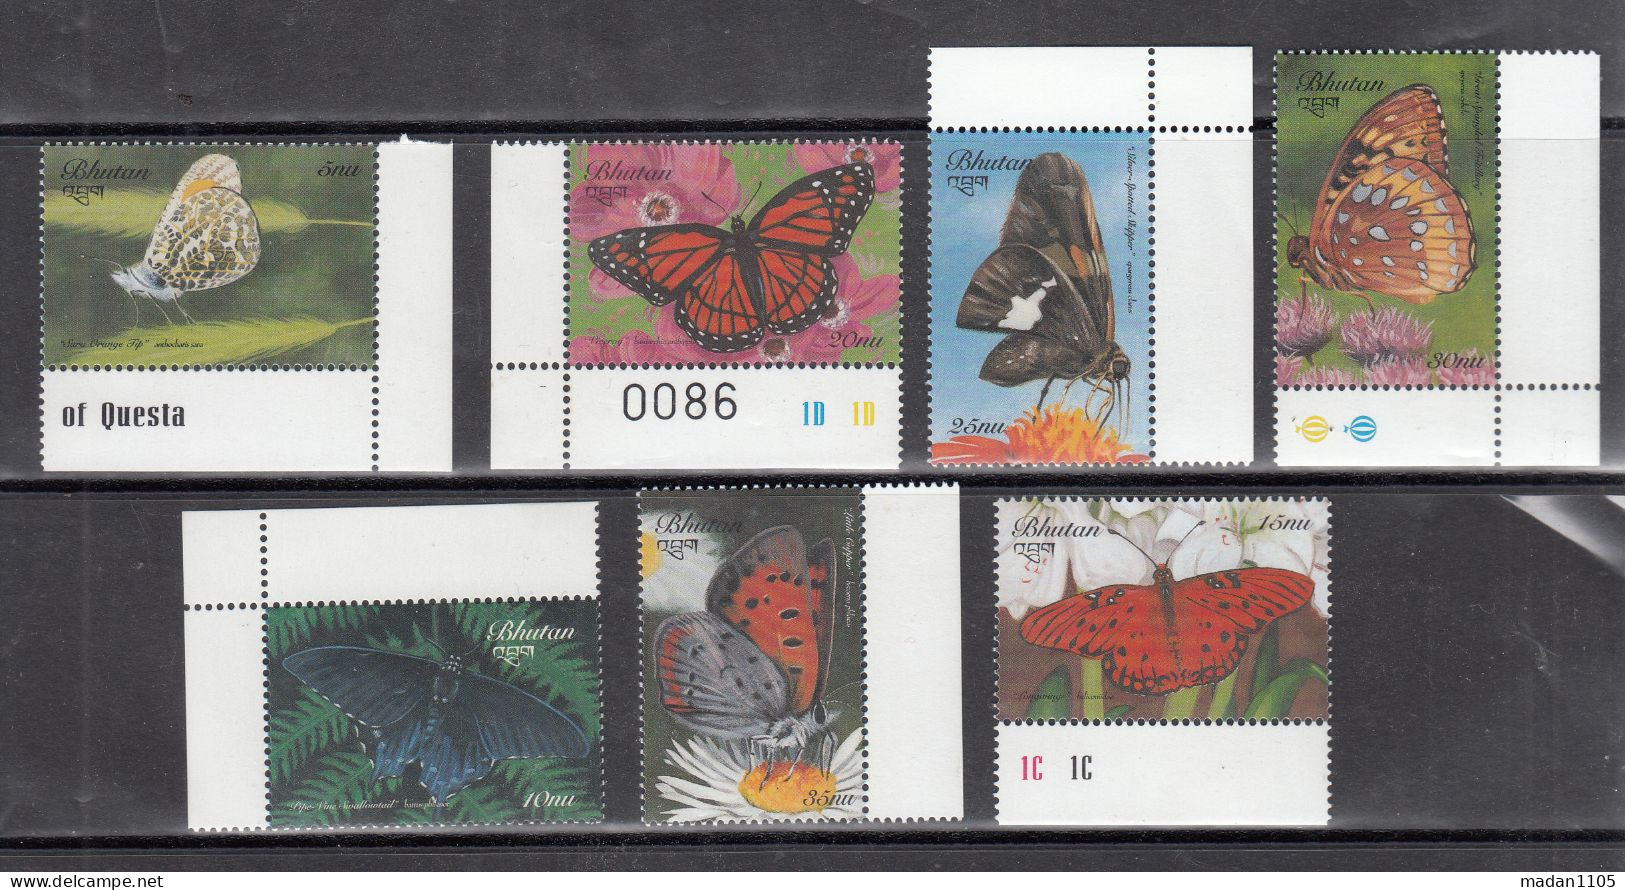 BHUTAN, 1999, Butterflies, Set Of 7 Complete Set,   MNH, (**) - Bhutan